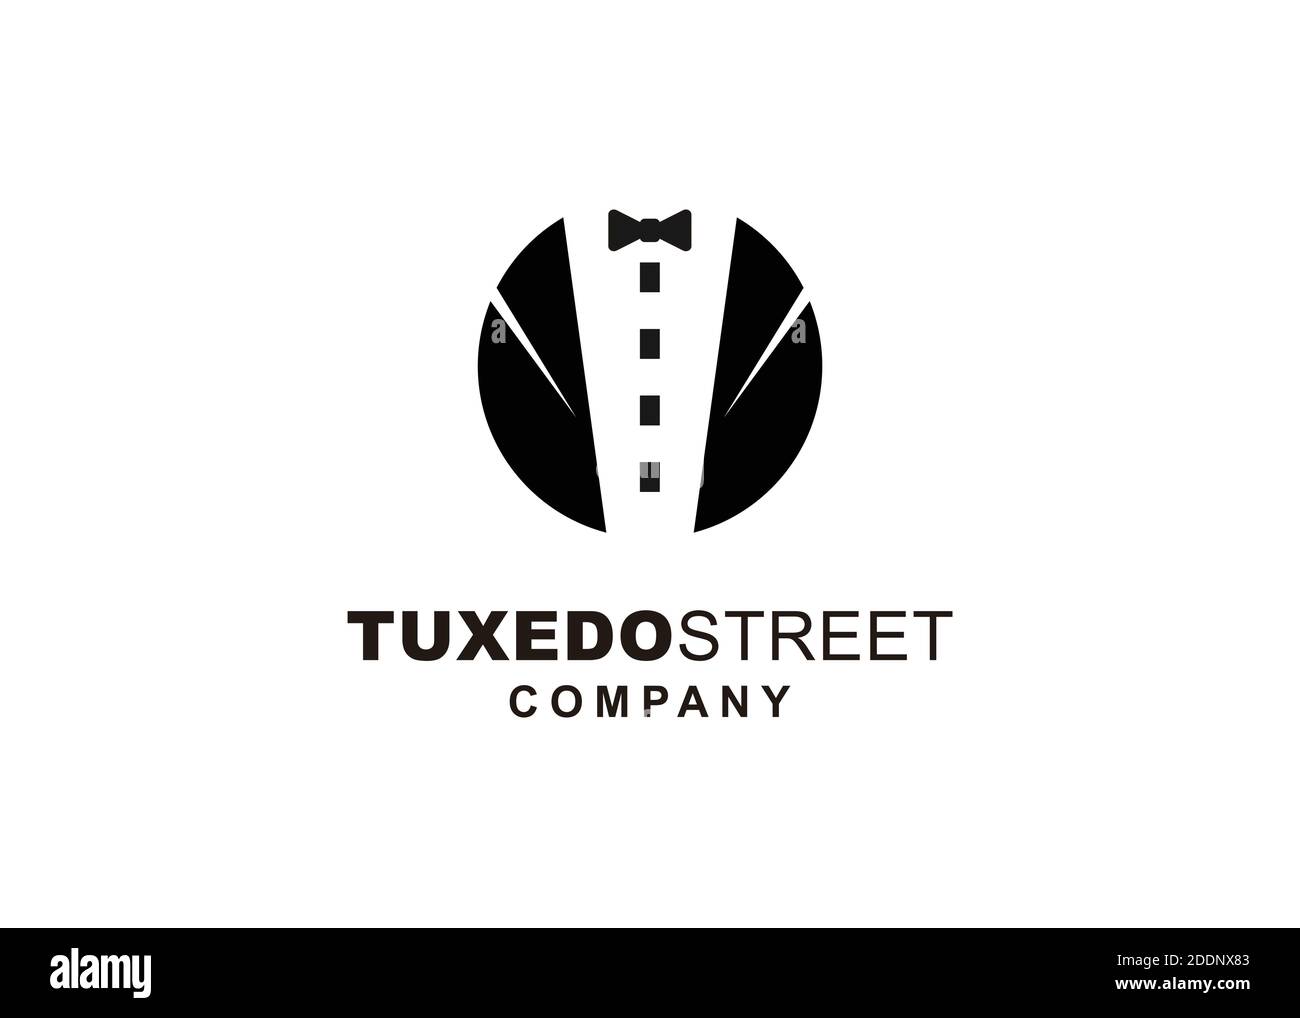 street tuxedo illustration logo design Stock Vector